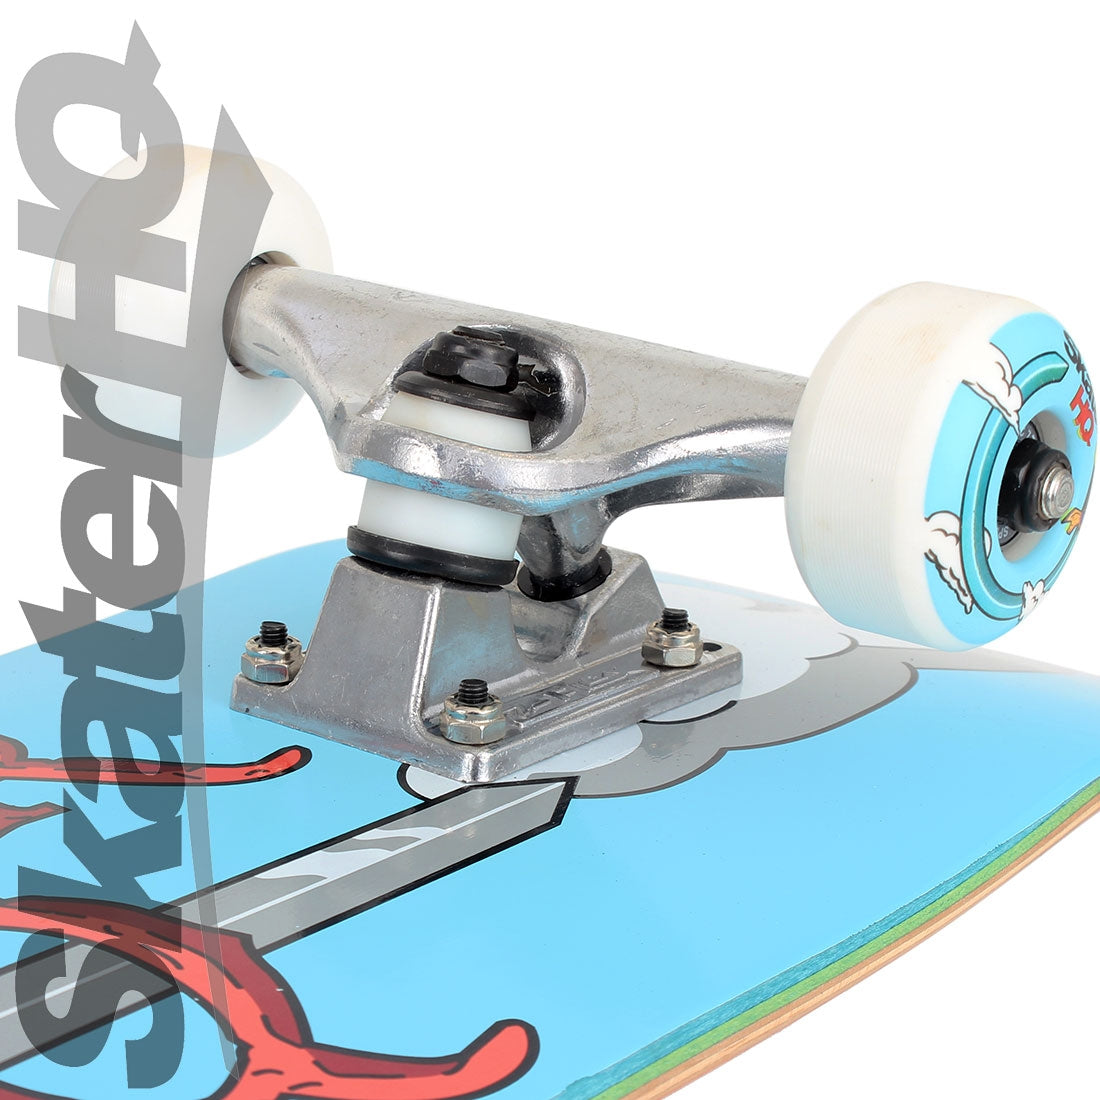 Skater HQ Shredding Time V2 7.25 Mini S Complete Skateboard Completes Modern Street